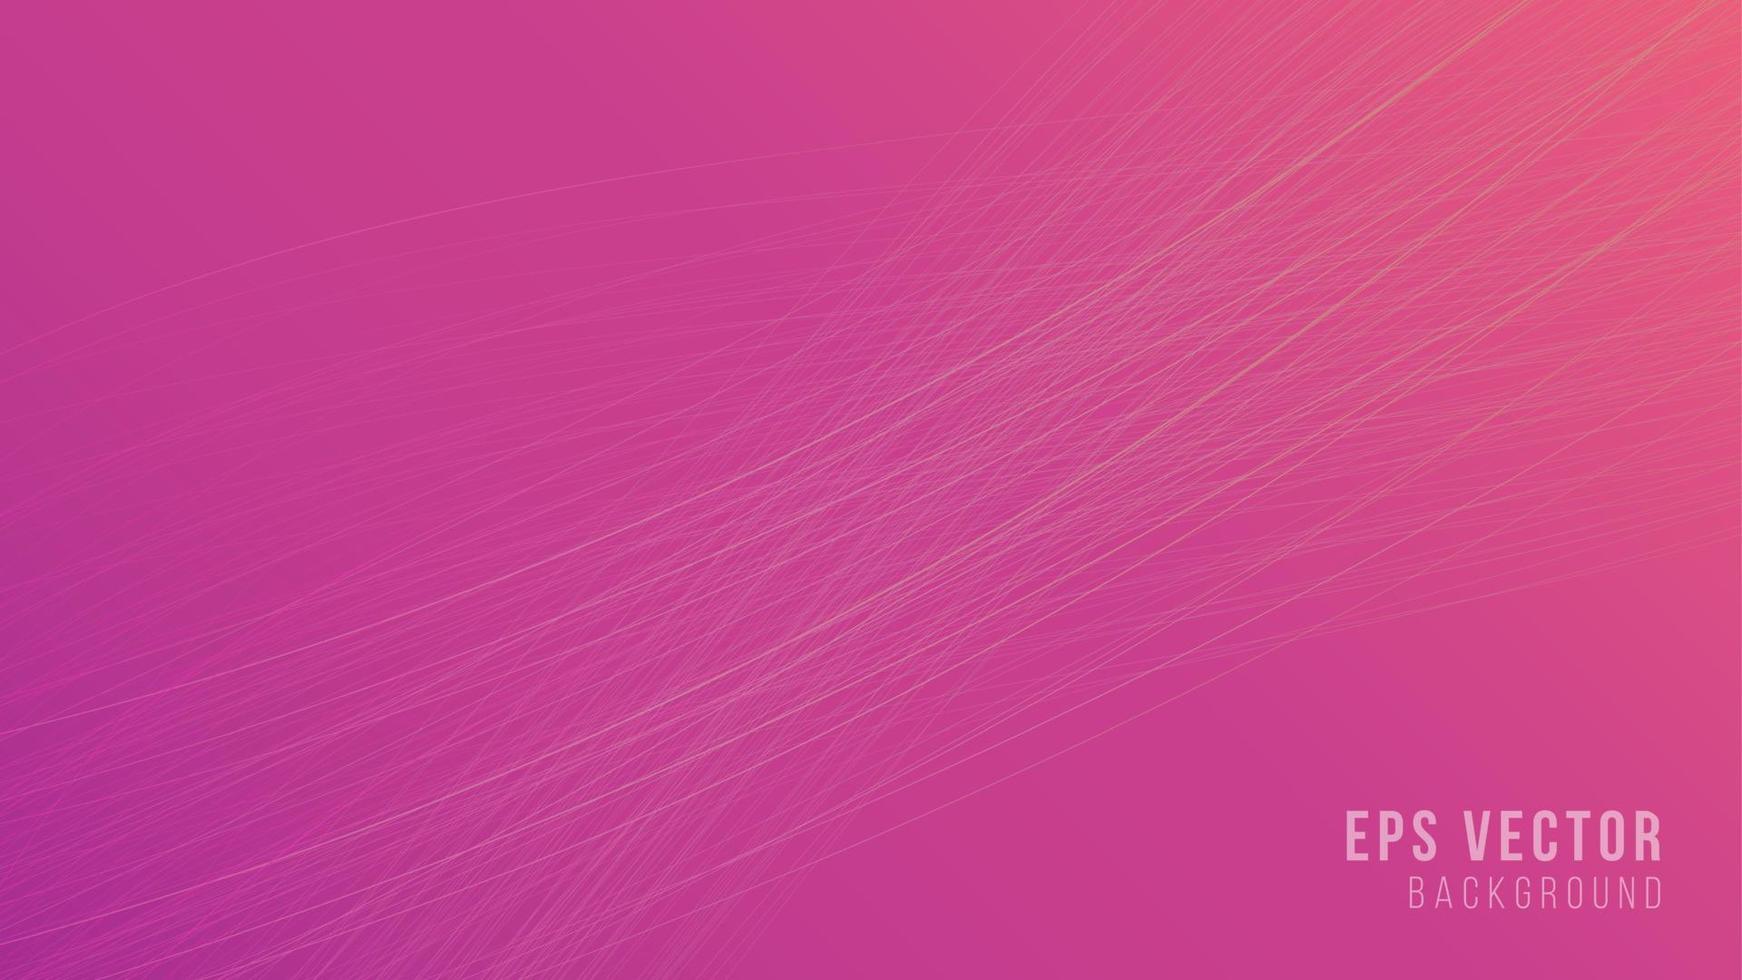 la linea astratta rosa ondeggia lo sfondo con lo stile delle linee ondulate sfumate. può essere utilizzato per poster, banner aziendali, volantini, pubblicità, brochure, cataloghi, siti web, siti web, presentazioni, copertine di libri, volantini vettore